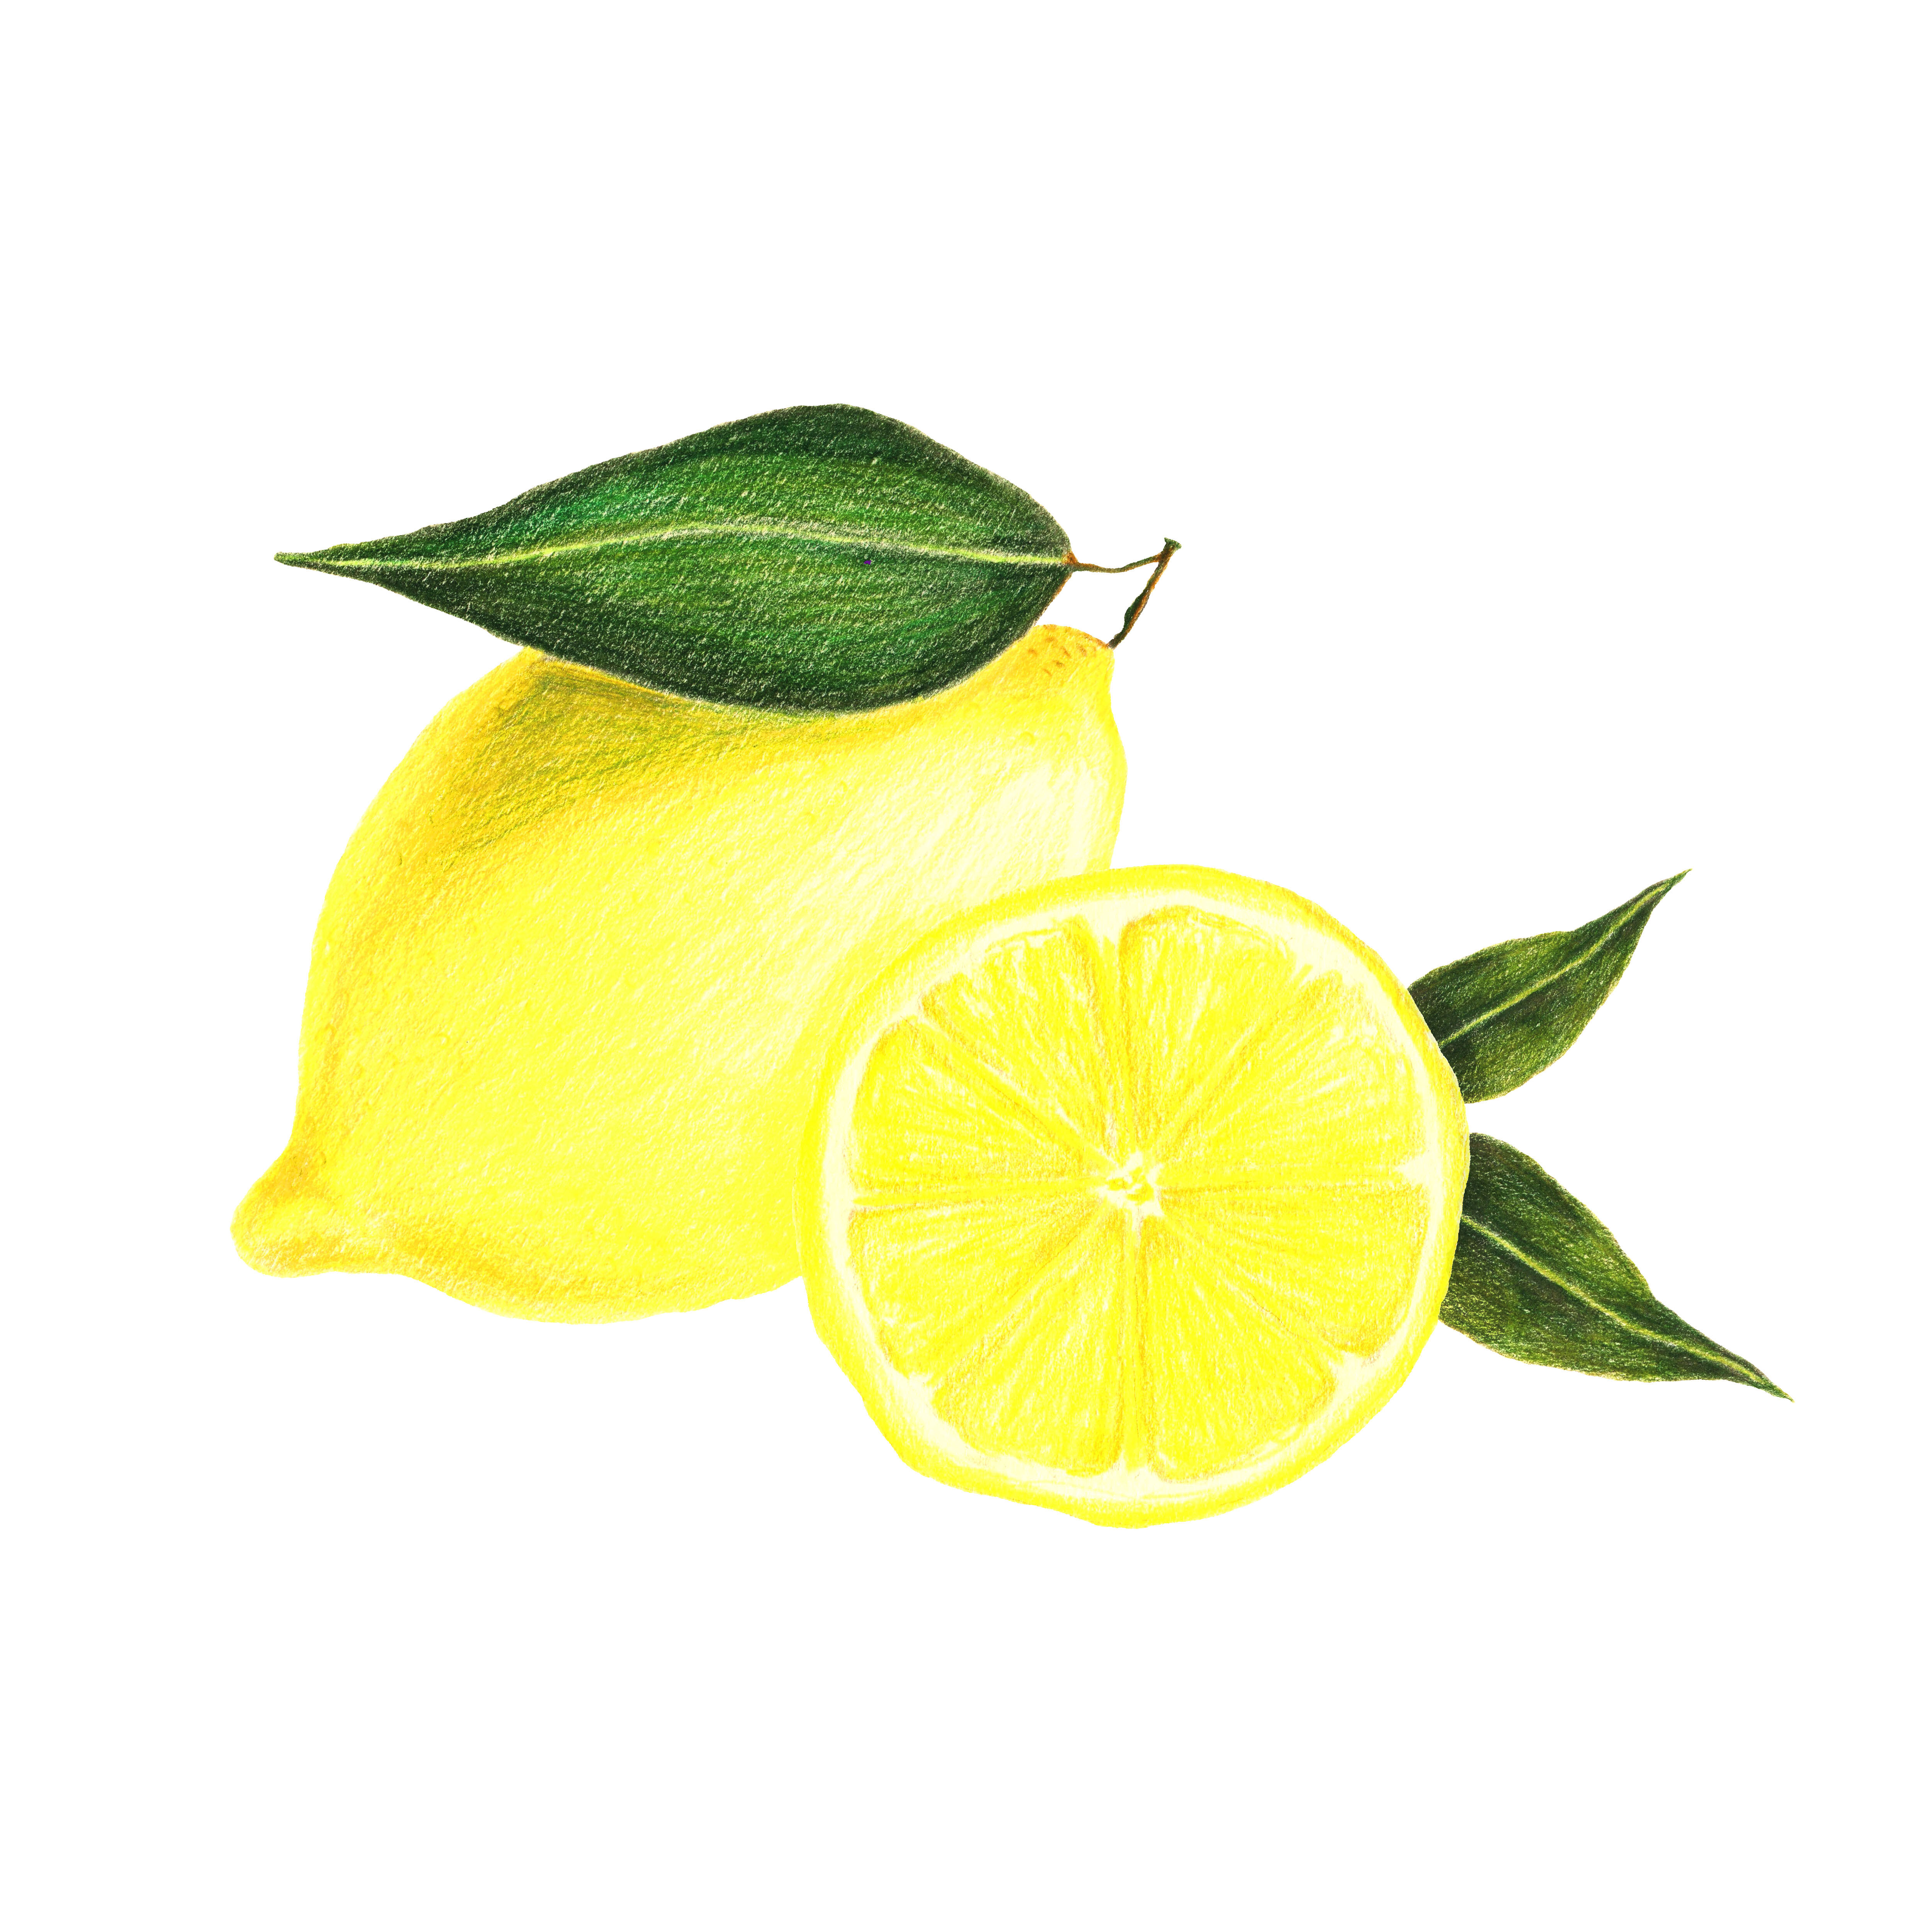 colored pencils Composition of lemons